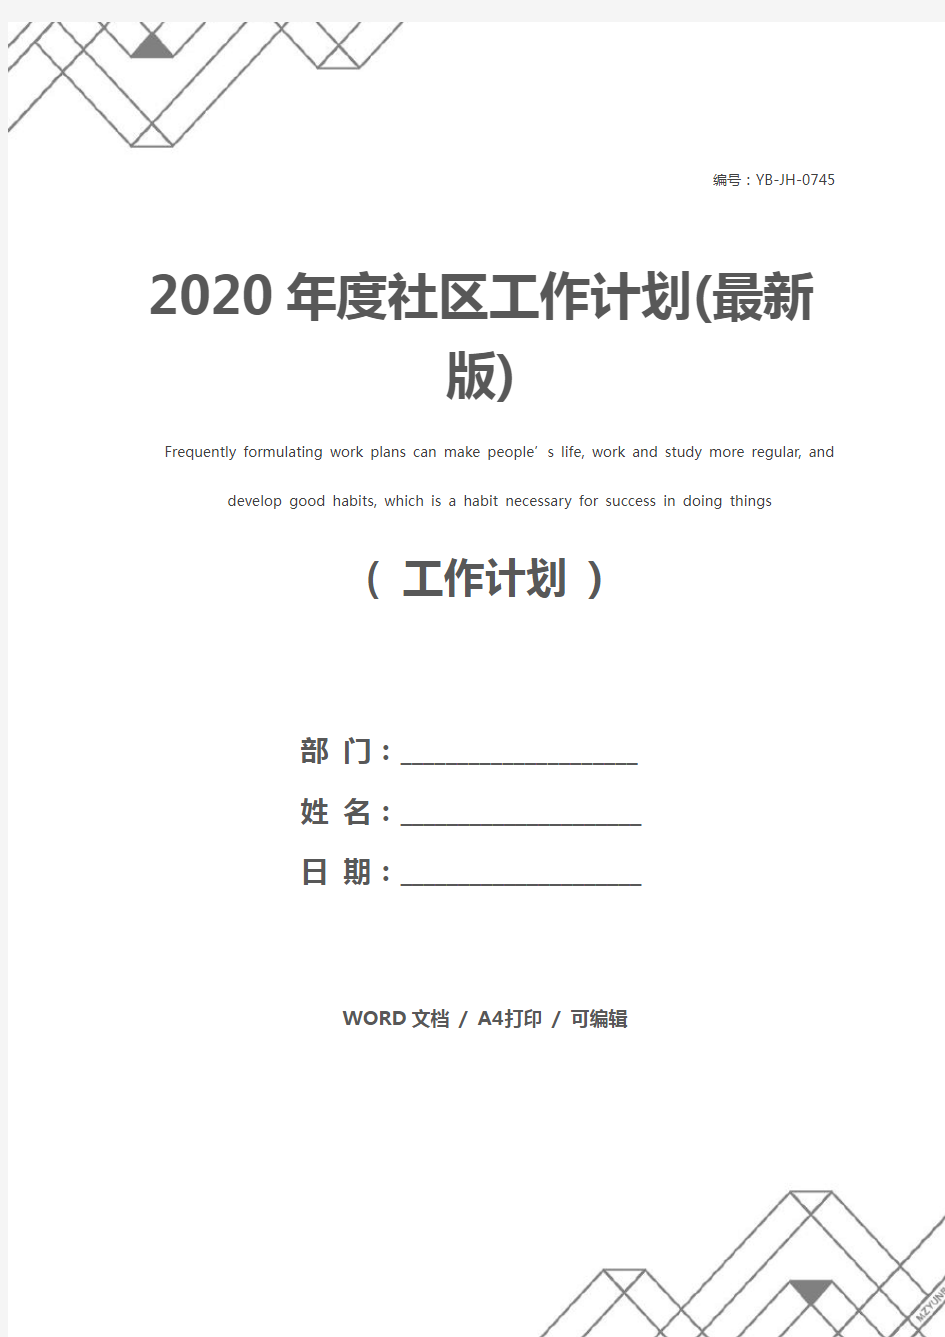 2020年度社区工作计划(最新版)